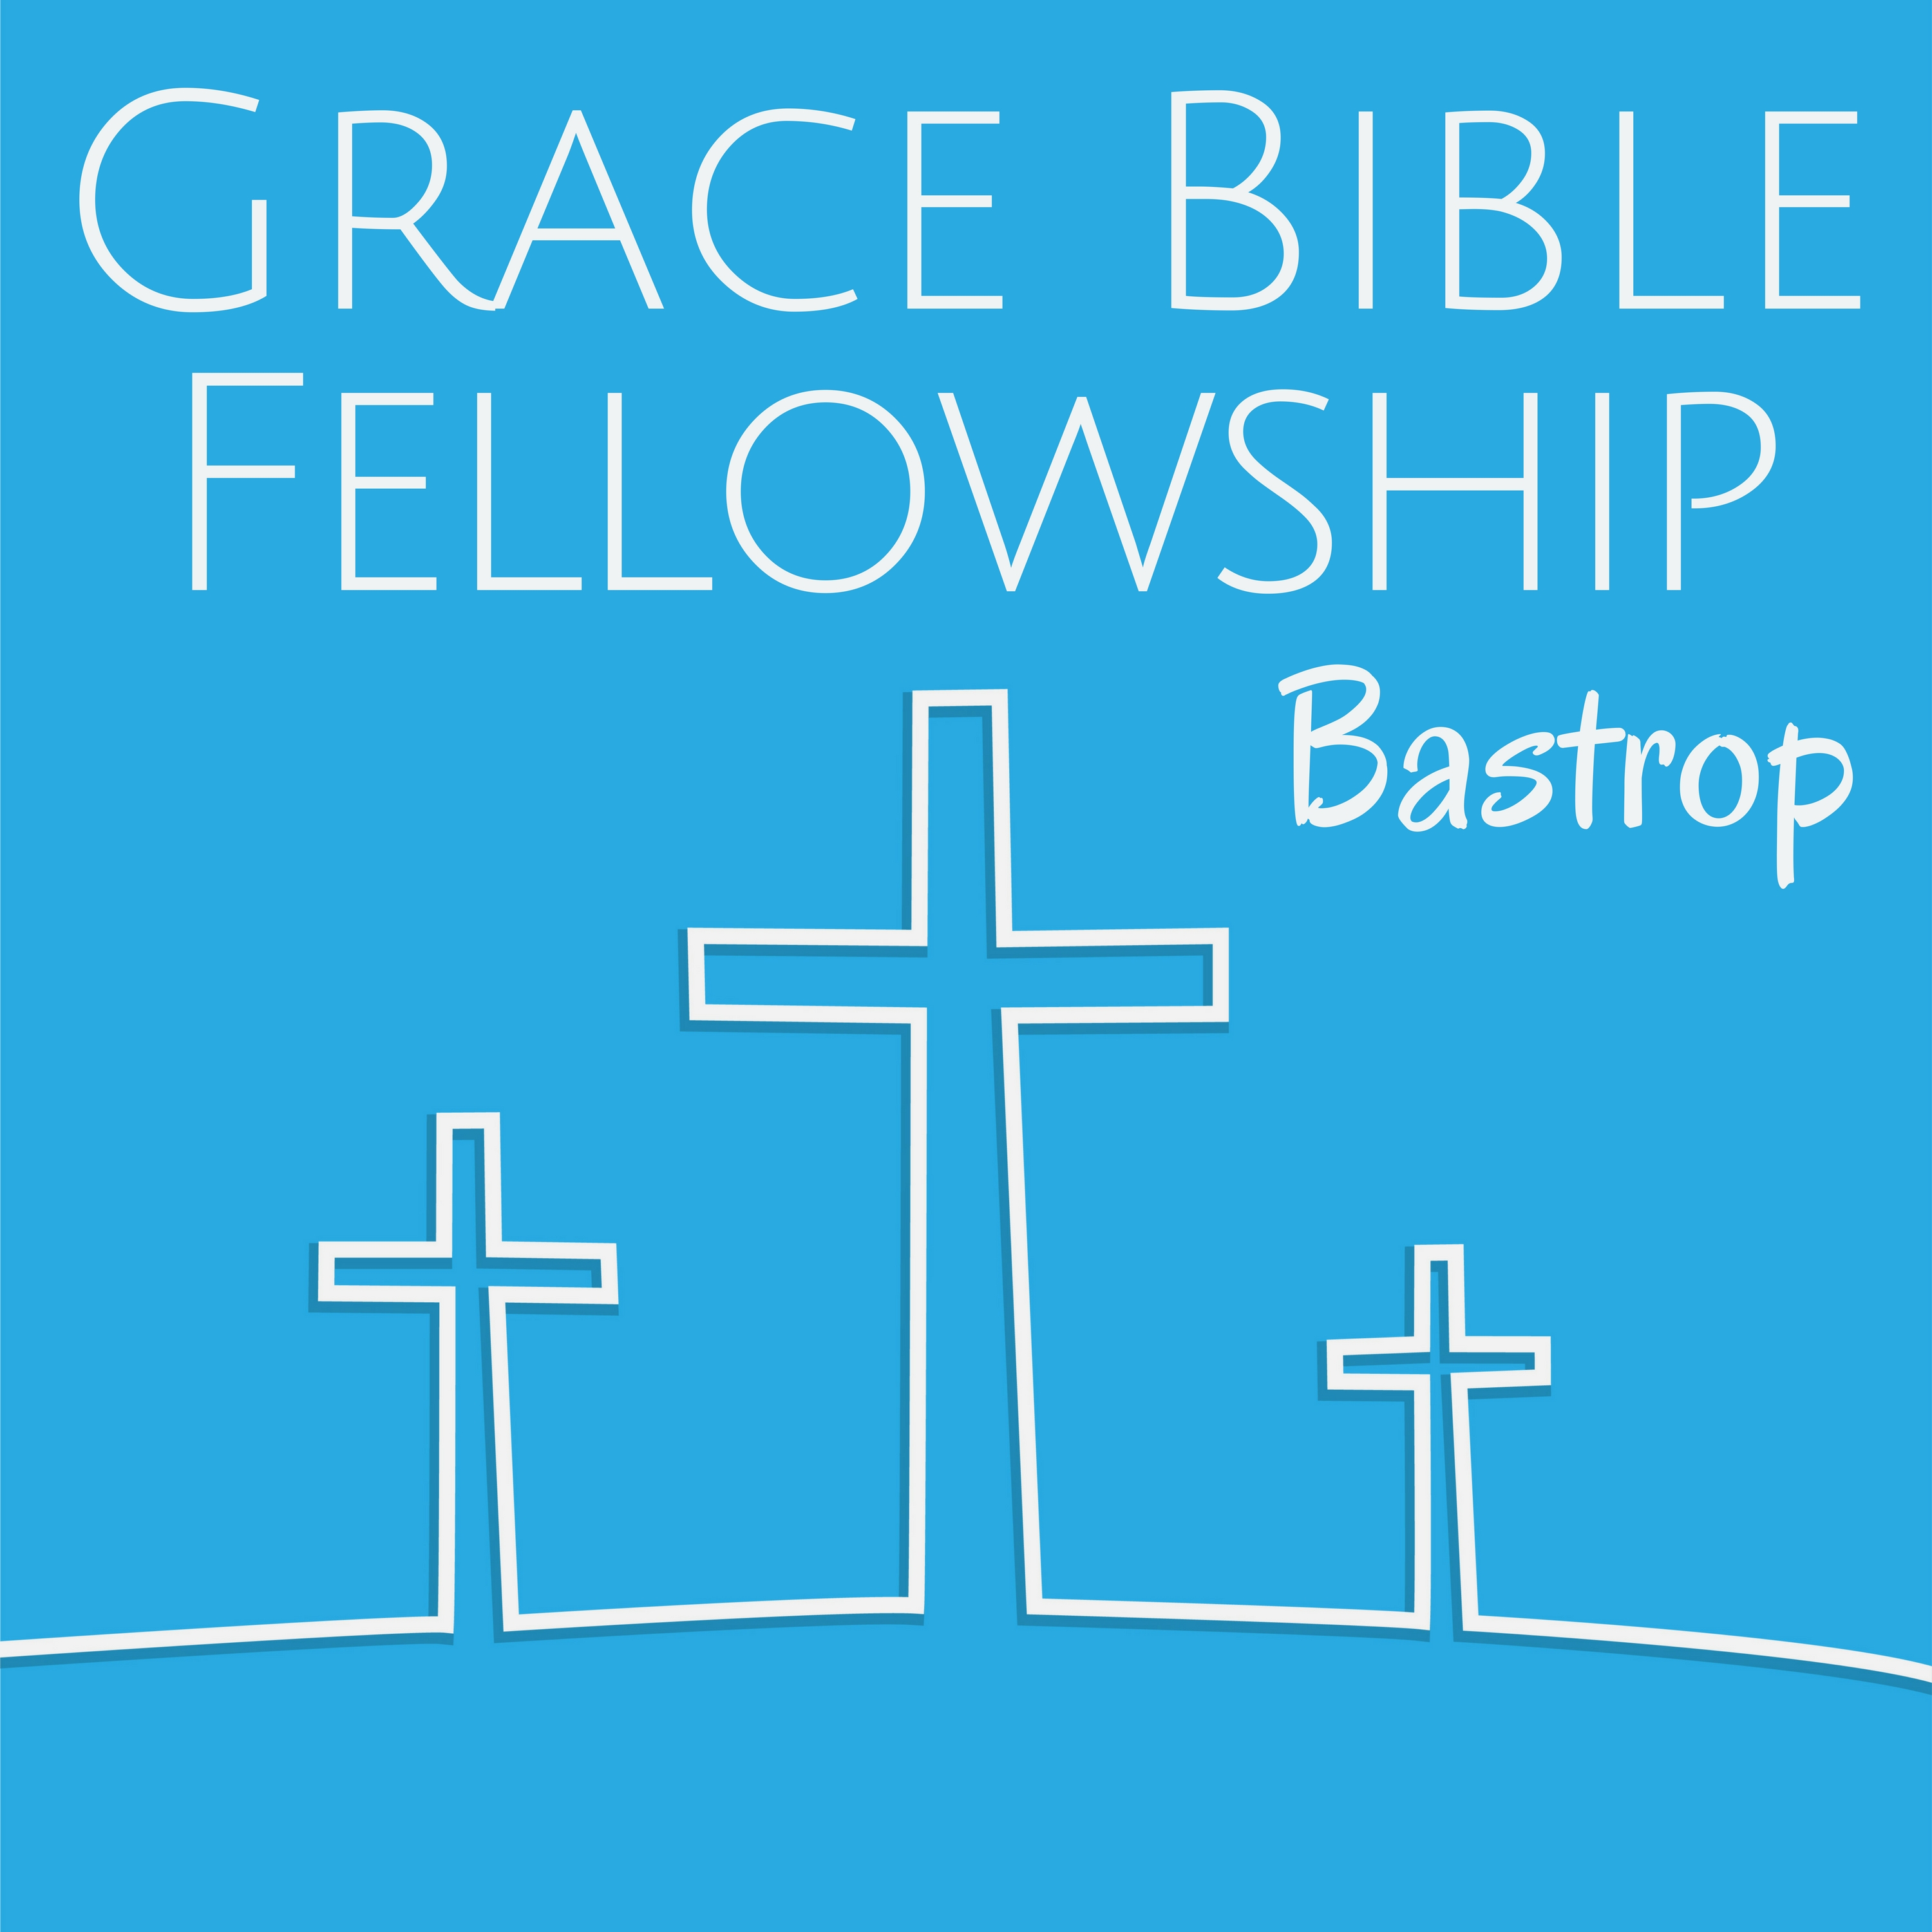 Grace Bible Fellowship, Bastrop Texas